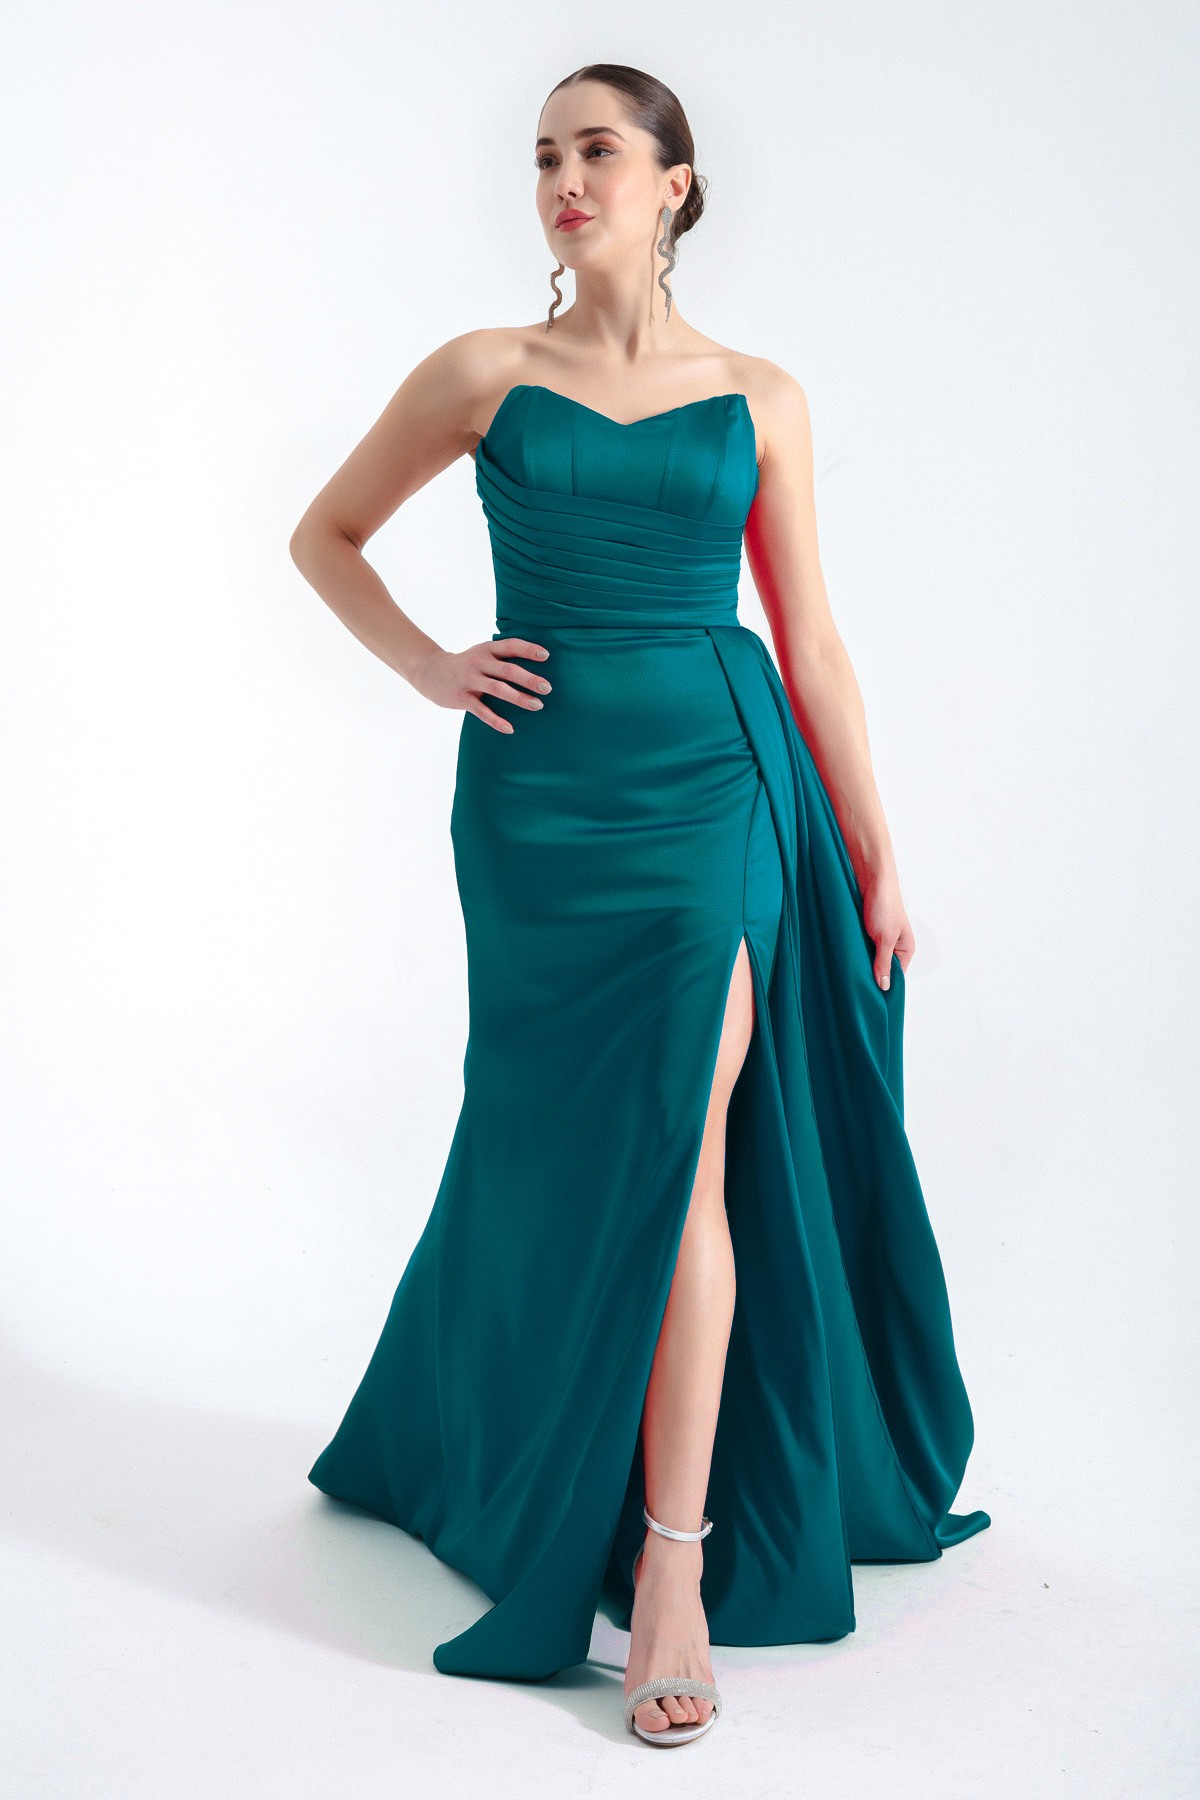 Kadın Straplez Uzun Abiye Elbise - Zümrüt Yeşili